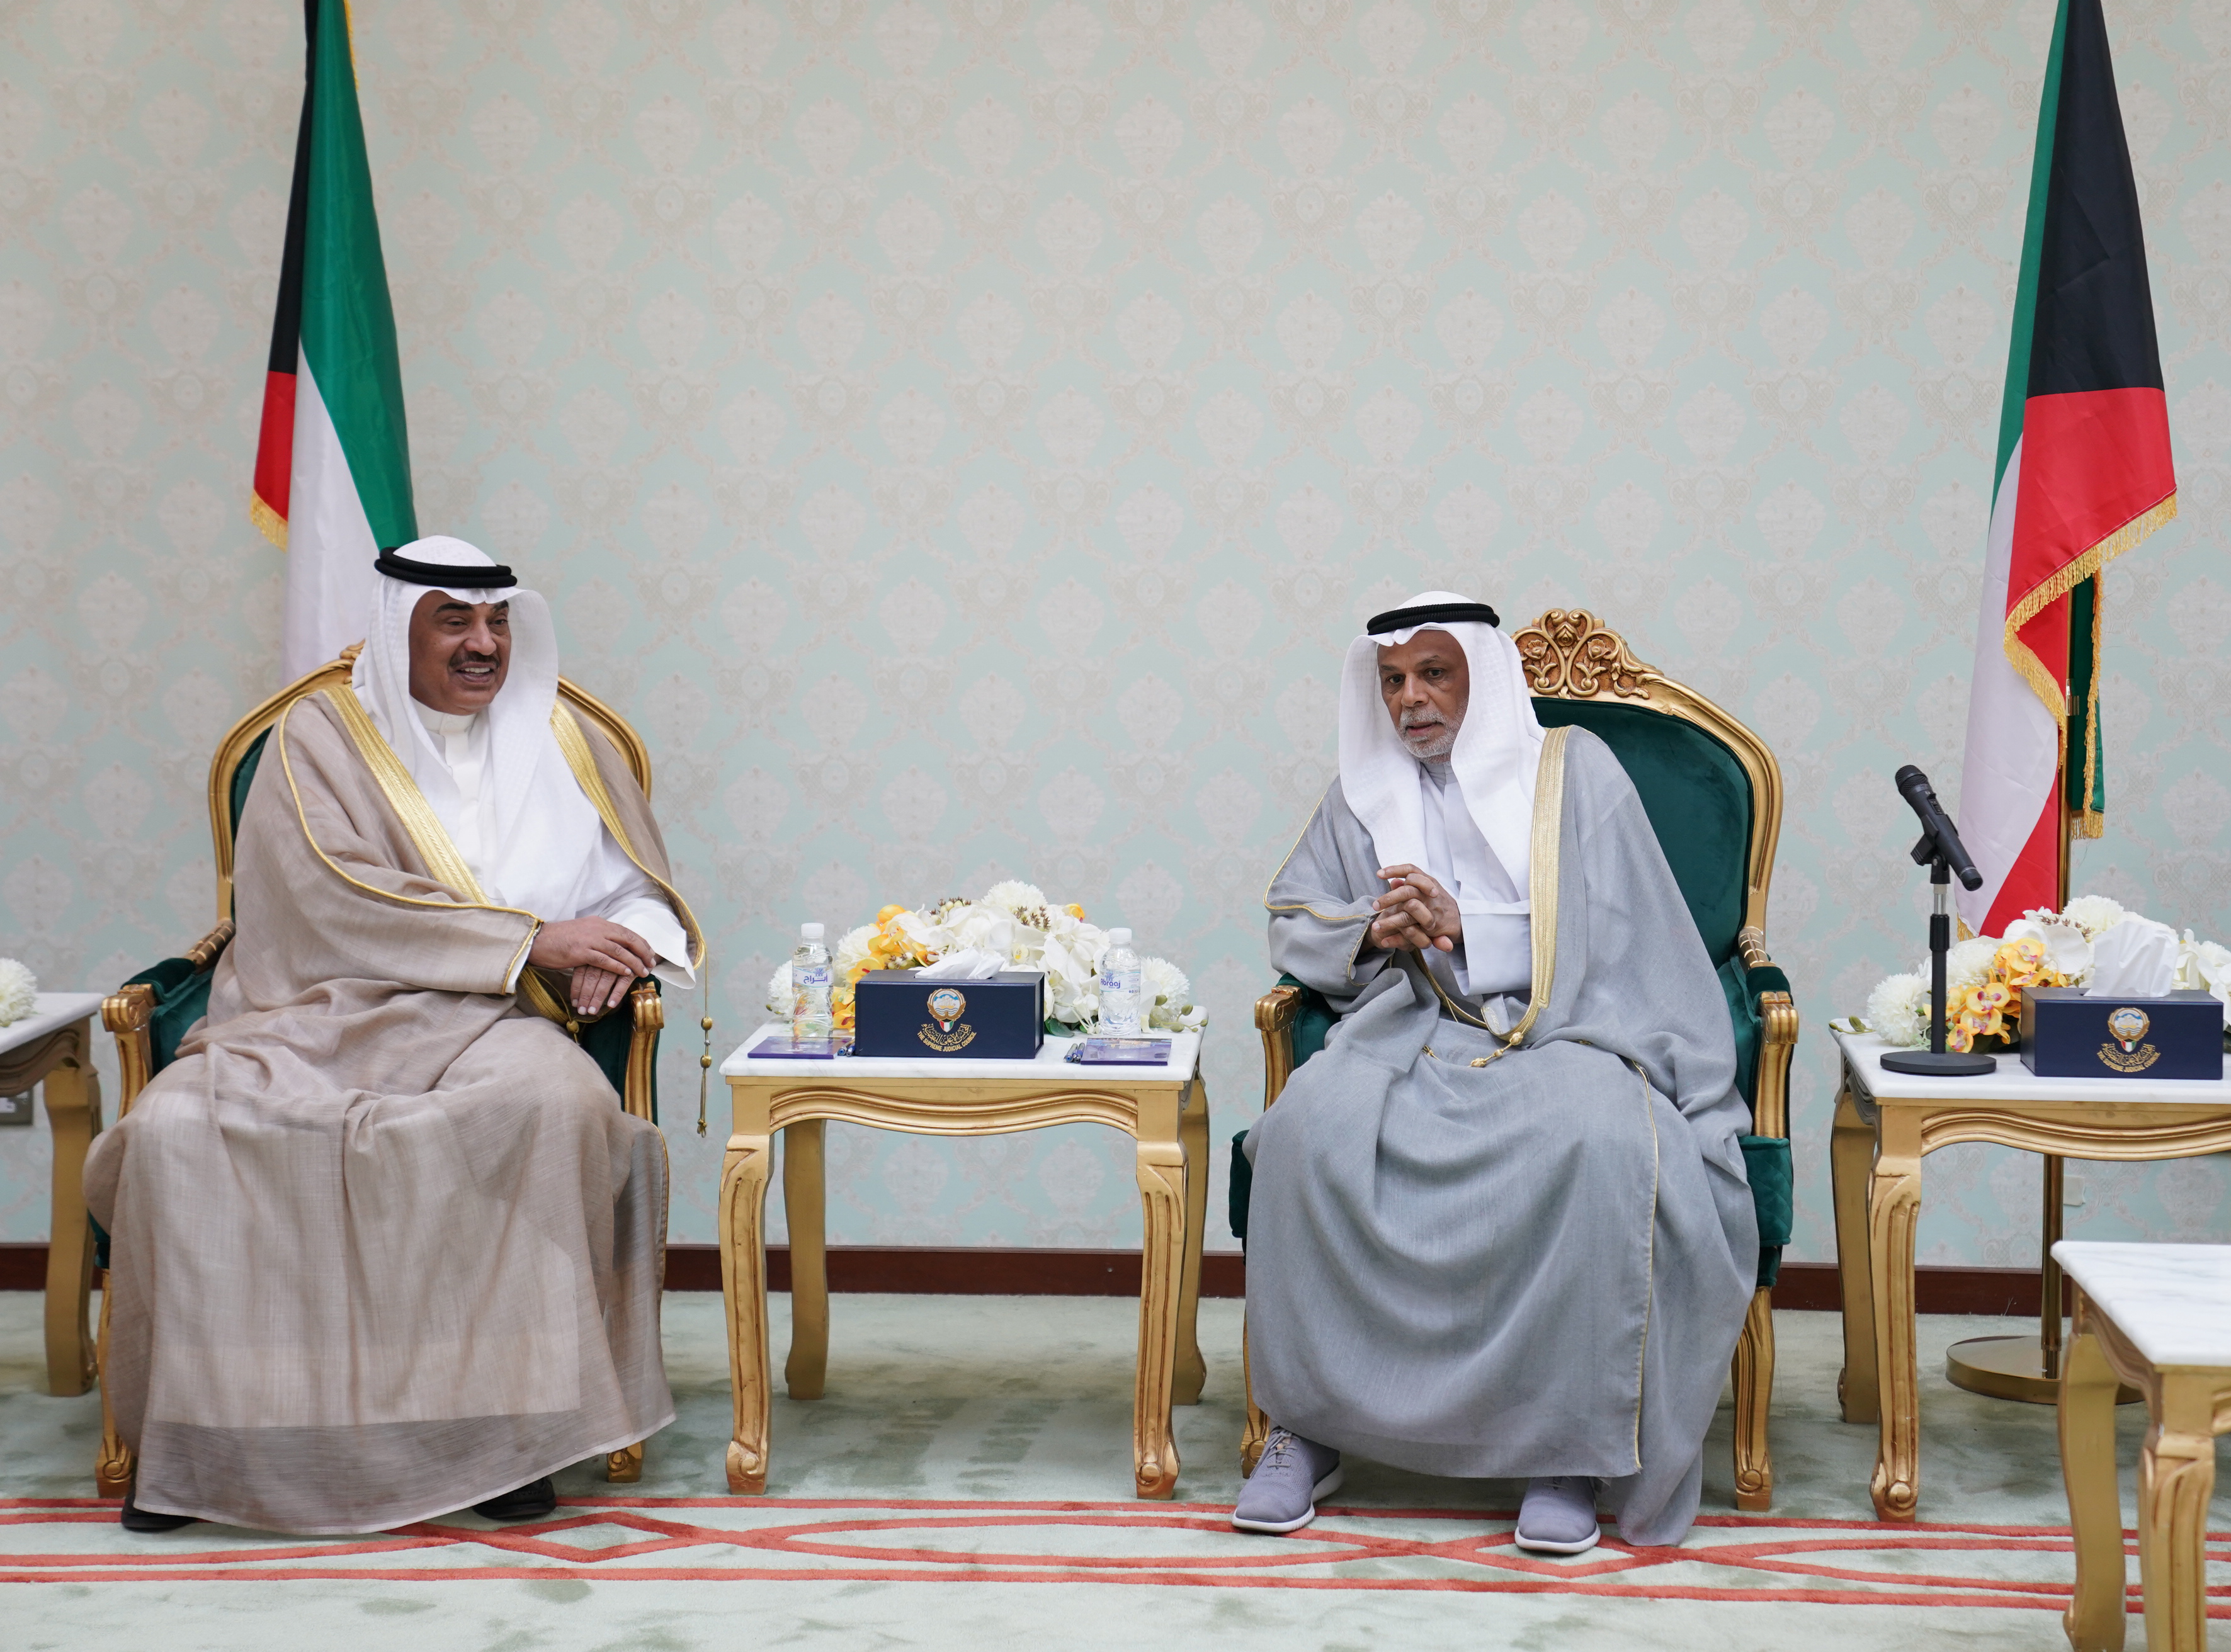 سمو الشيخ صباح خالد الحمد الصباح رئيس مجلس الوزراء اثناء زيارته لرئيس المجلس الأعلى للقضاء